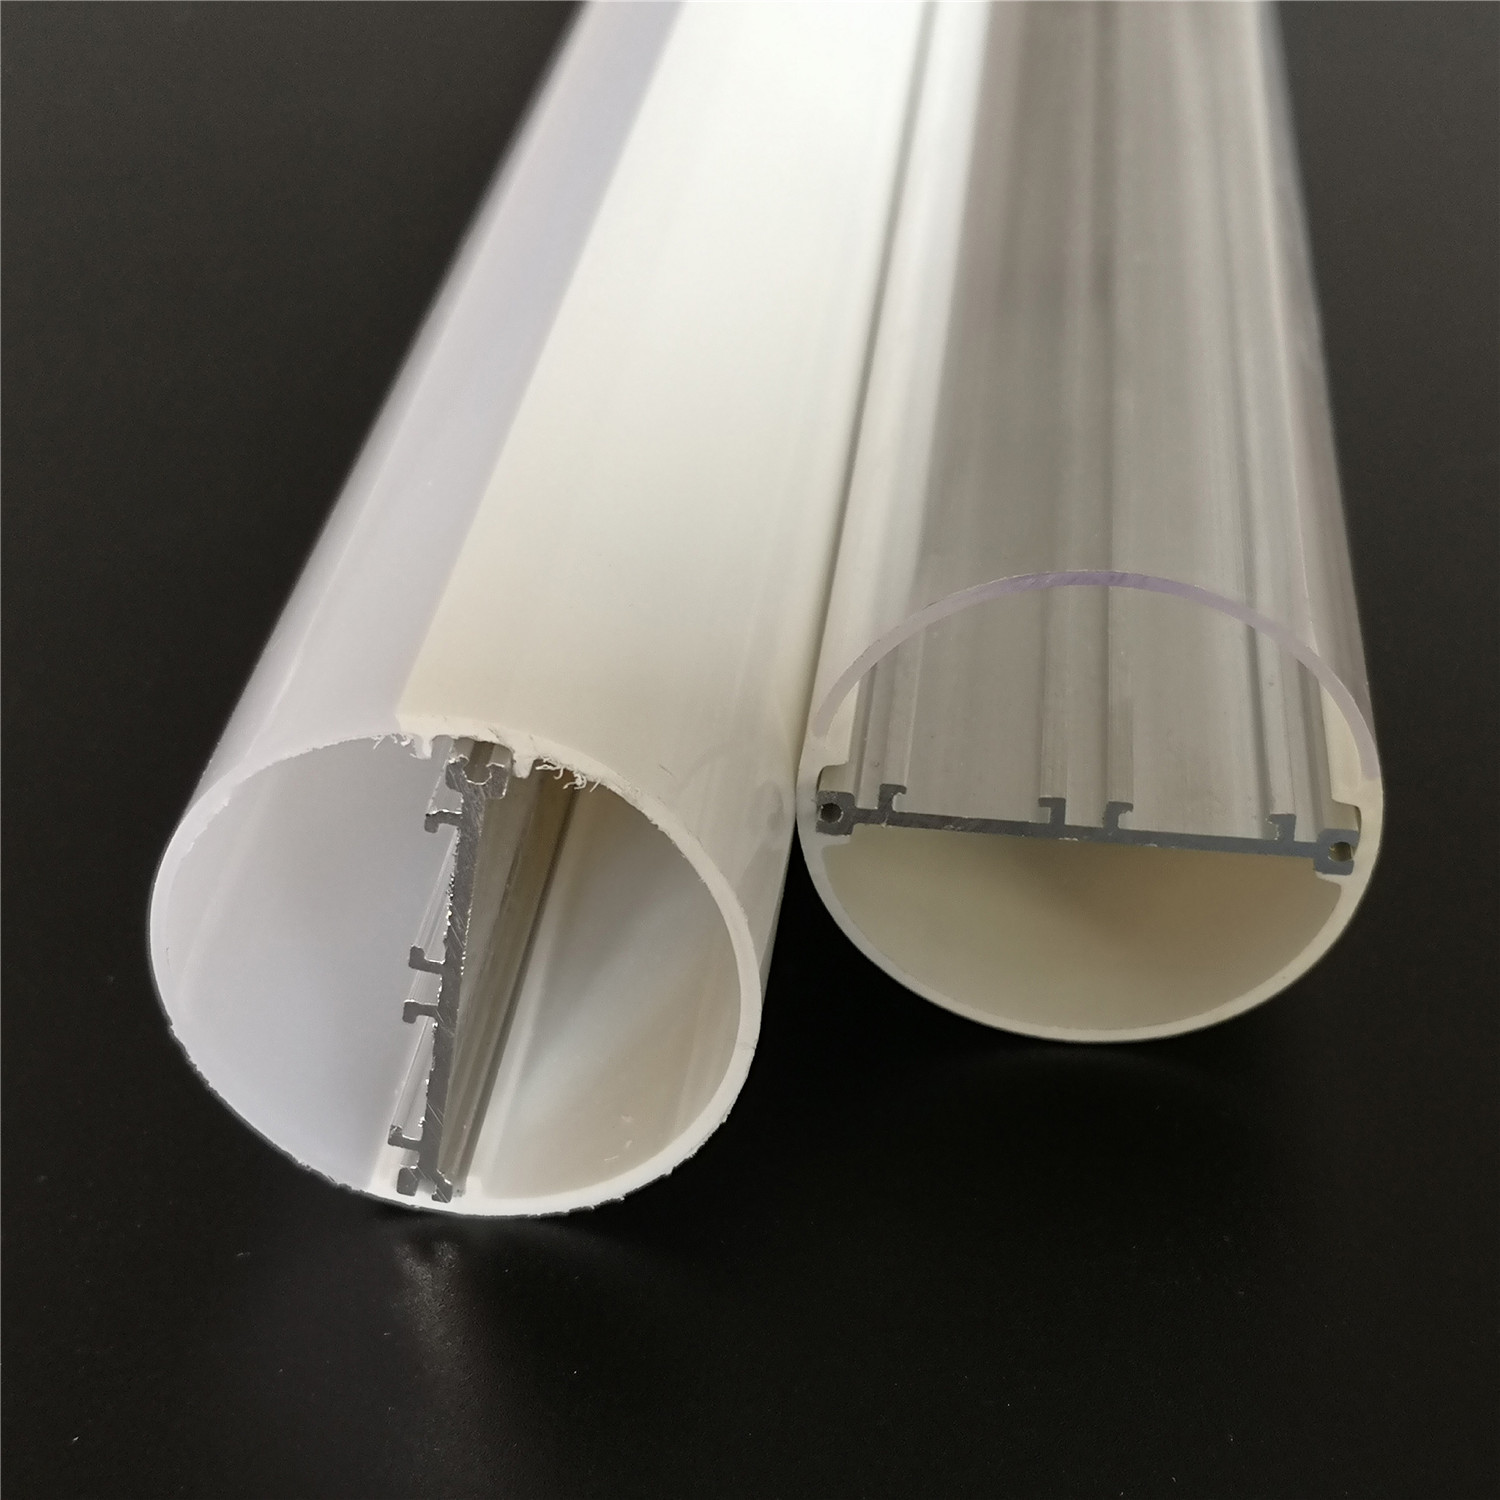 LED tube ဒီဇိုင်းအတွက် Optical Performance သတ်မှတ်ချက်သတ်မှတ်ချက်